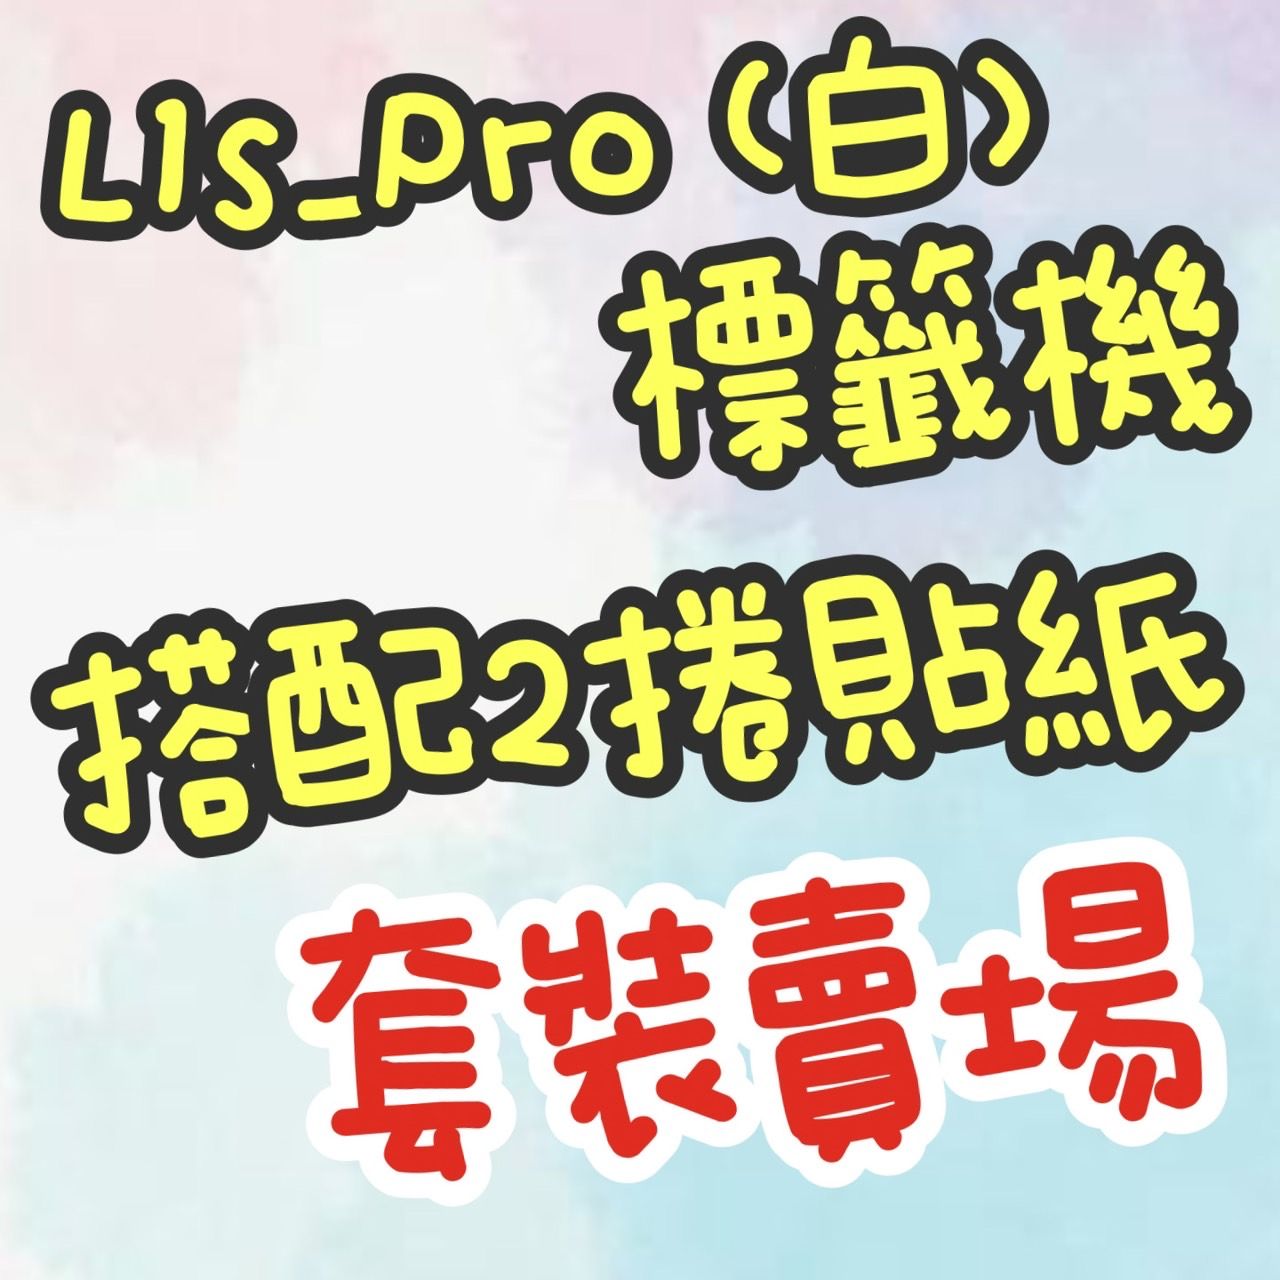 ⭐ L1S_Pro （白） + 2捲貼紙 組合賣場 ⭐